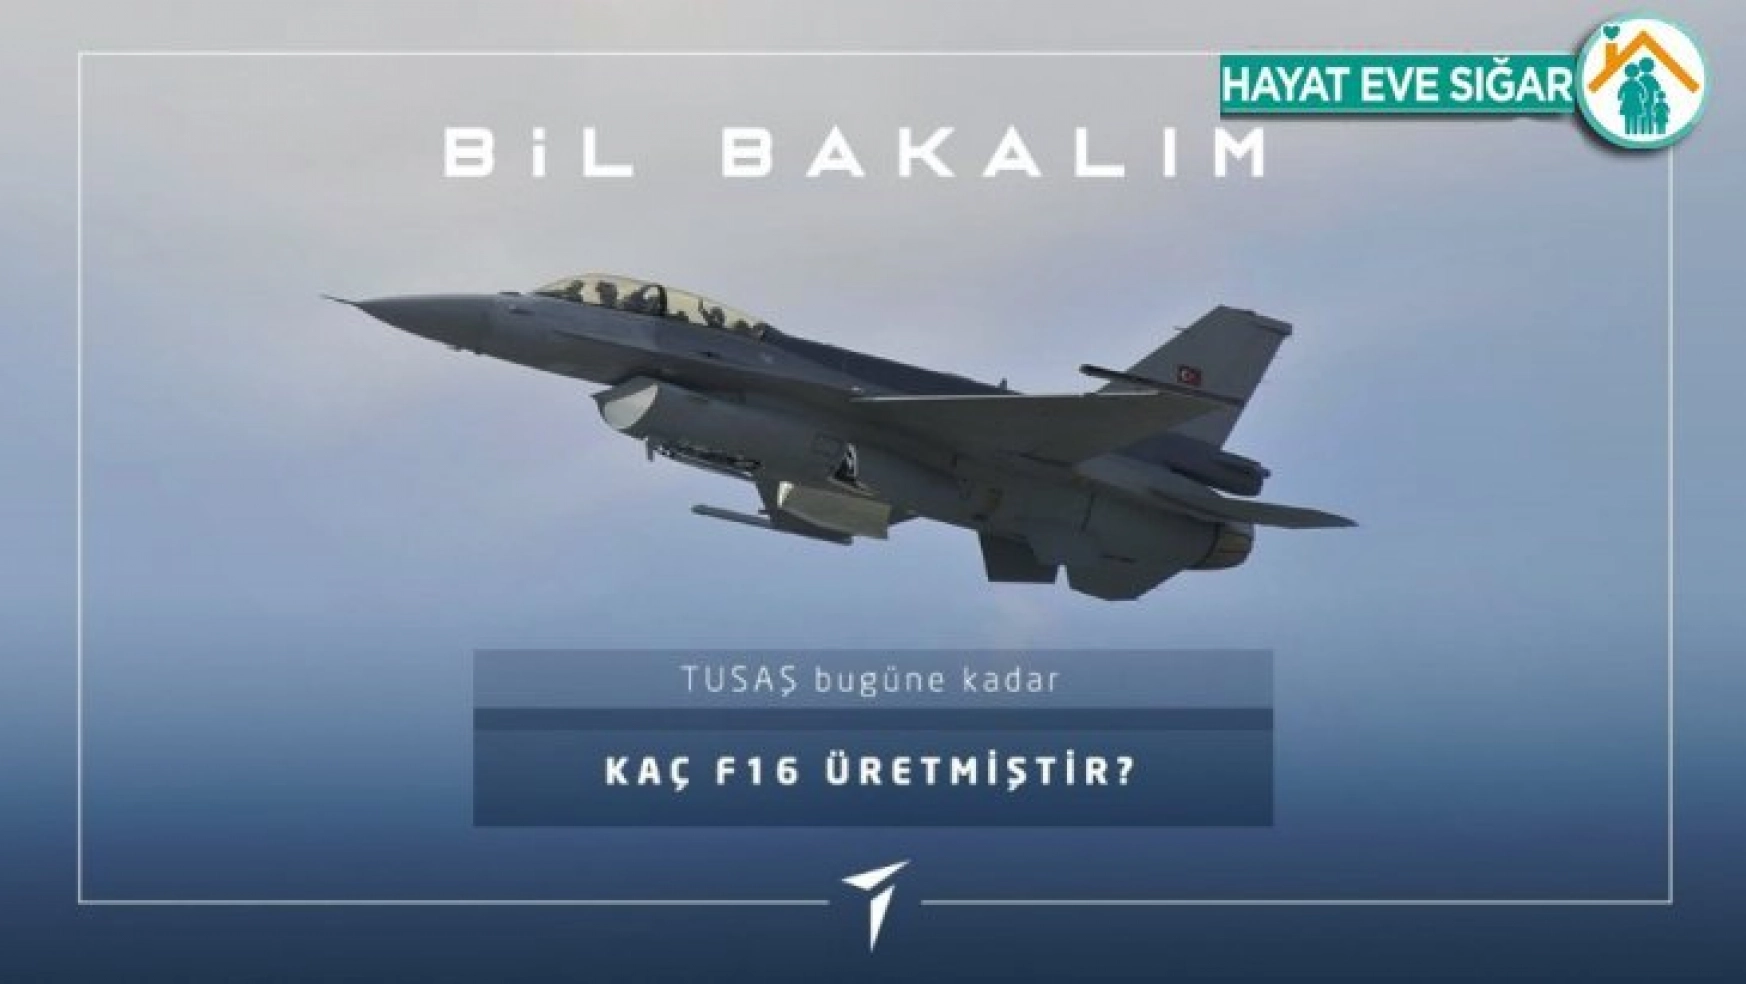 TUSAŞ, bugüne kadar 308 adet F-16 ürettiğini açıkladı